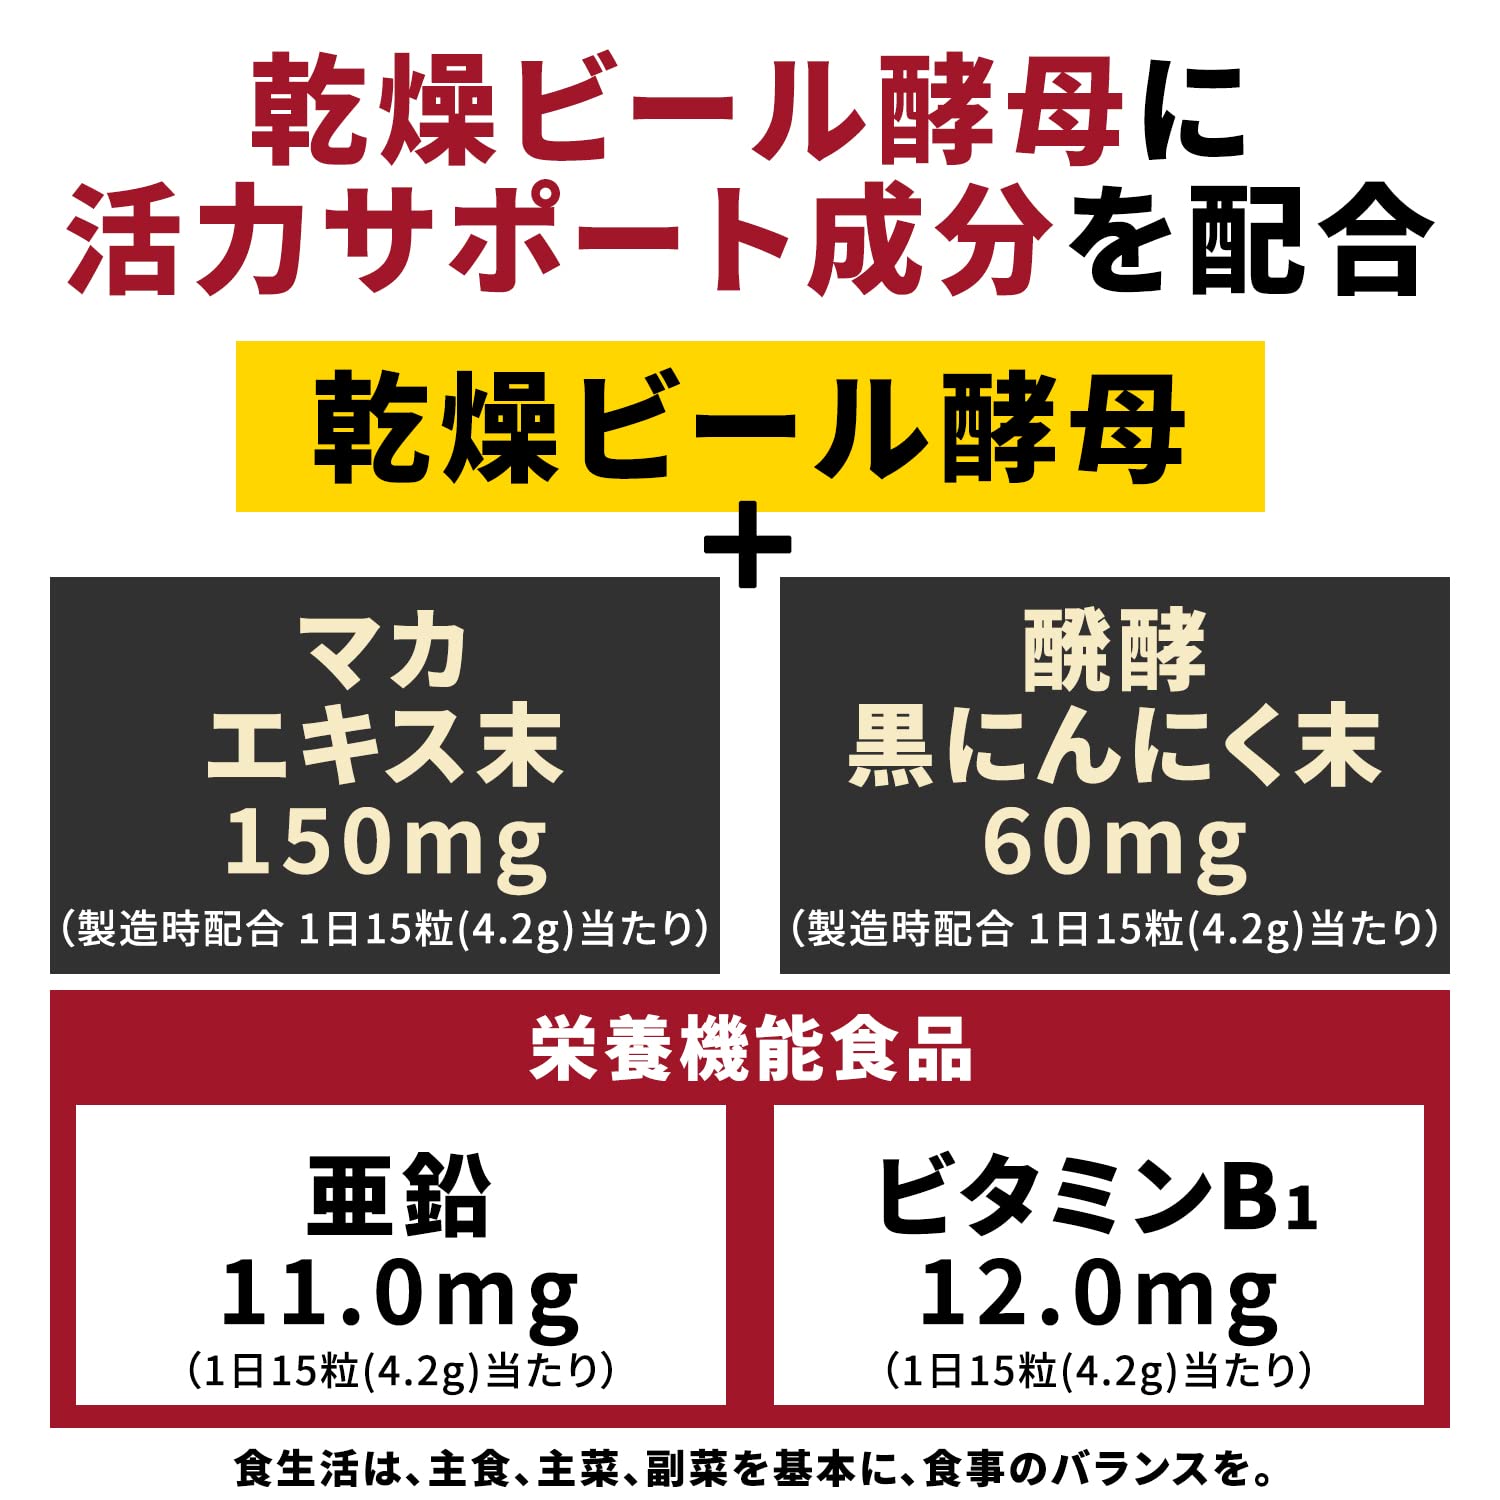 Mua スーパービール酵母Z 亜鉛マカ 黒にんにく 300粒 (20日分) trên Amazon Nhật chính hãng 2022 |  Giaonhan247